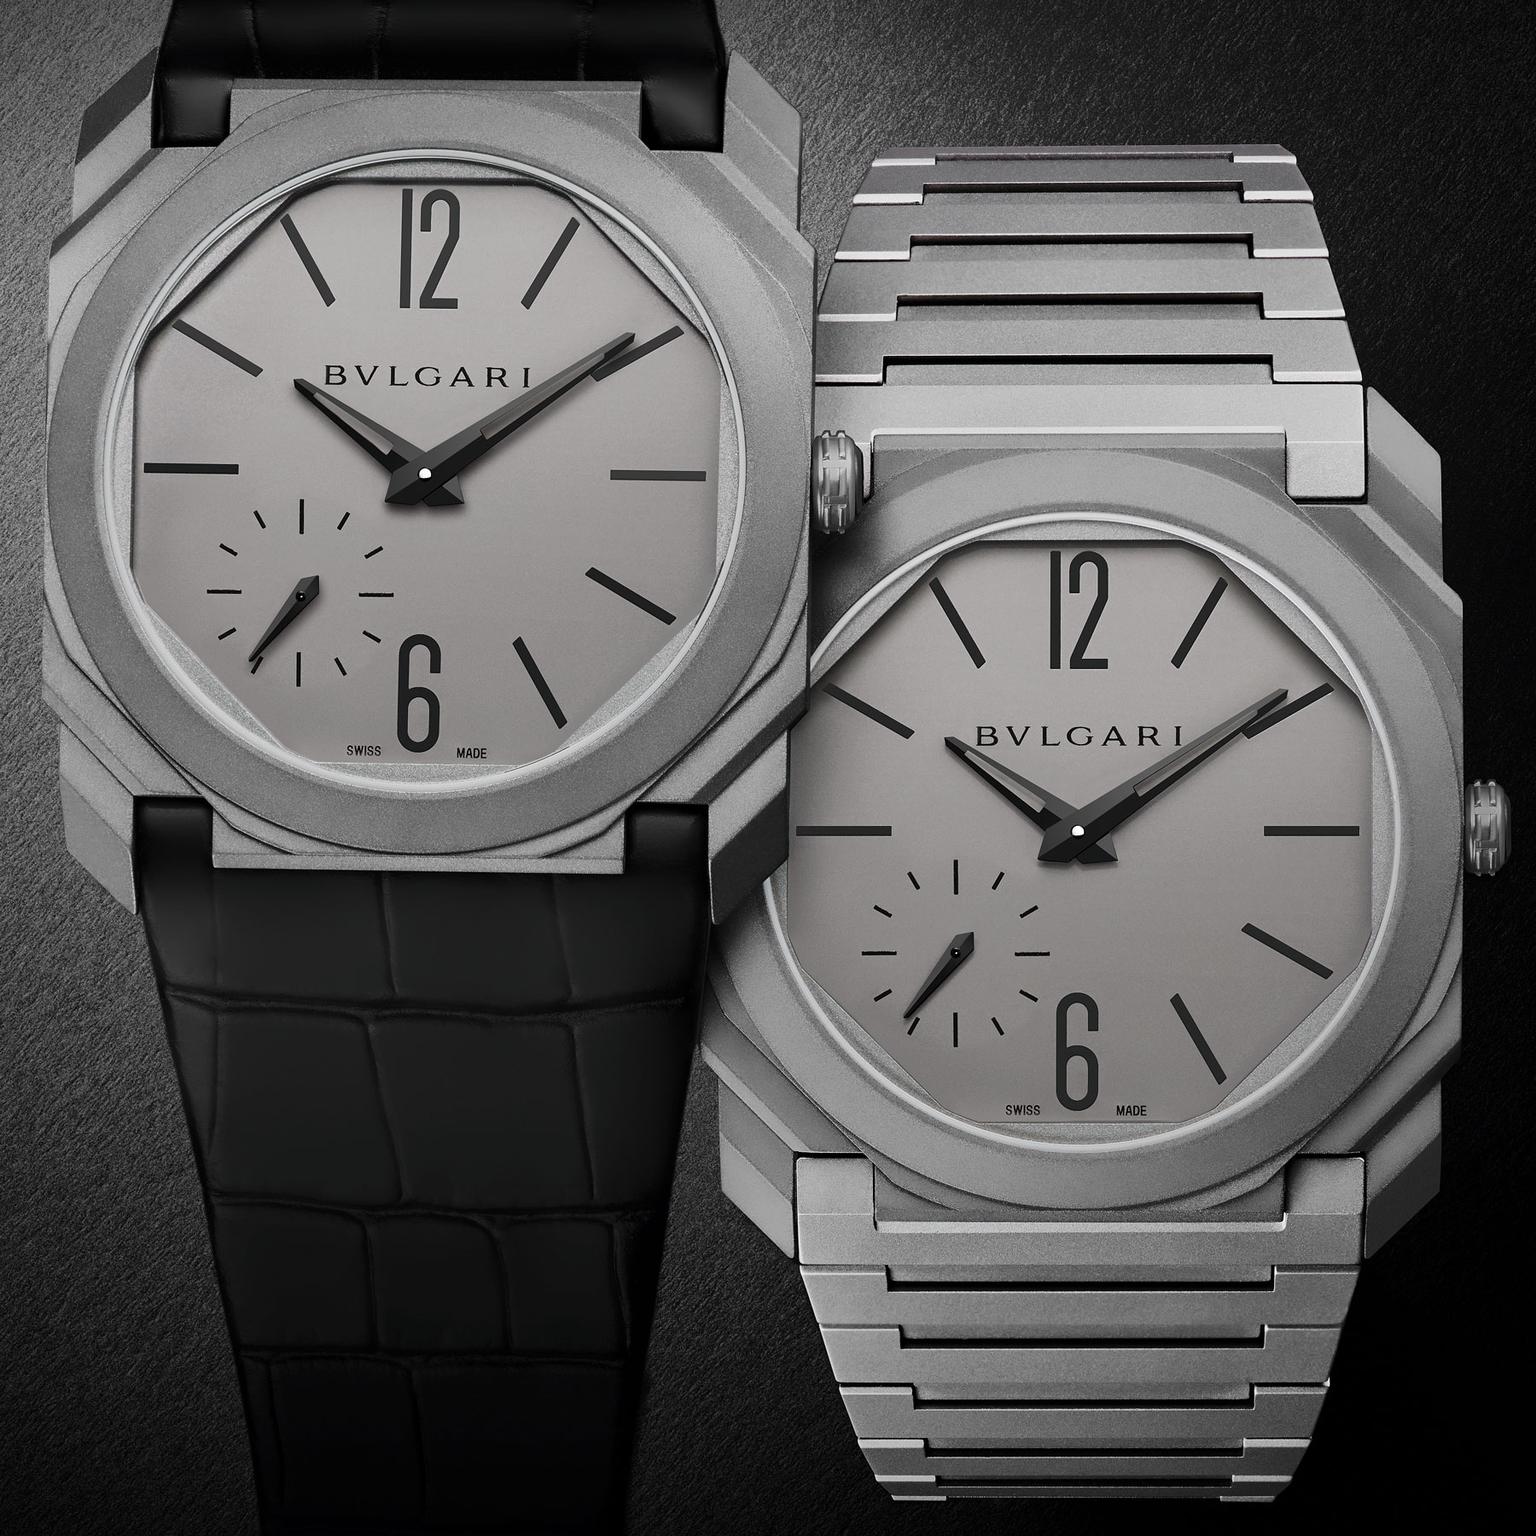 Bulgari Octo Finissimo Automatic watch in titanium